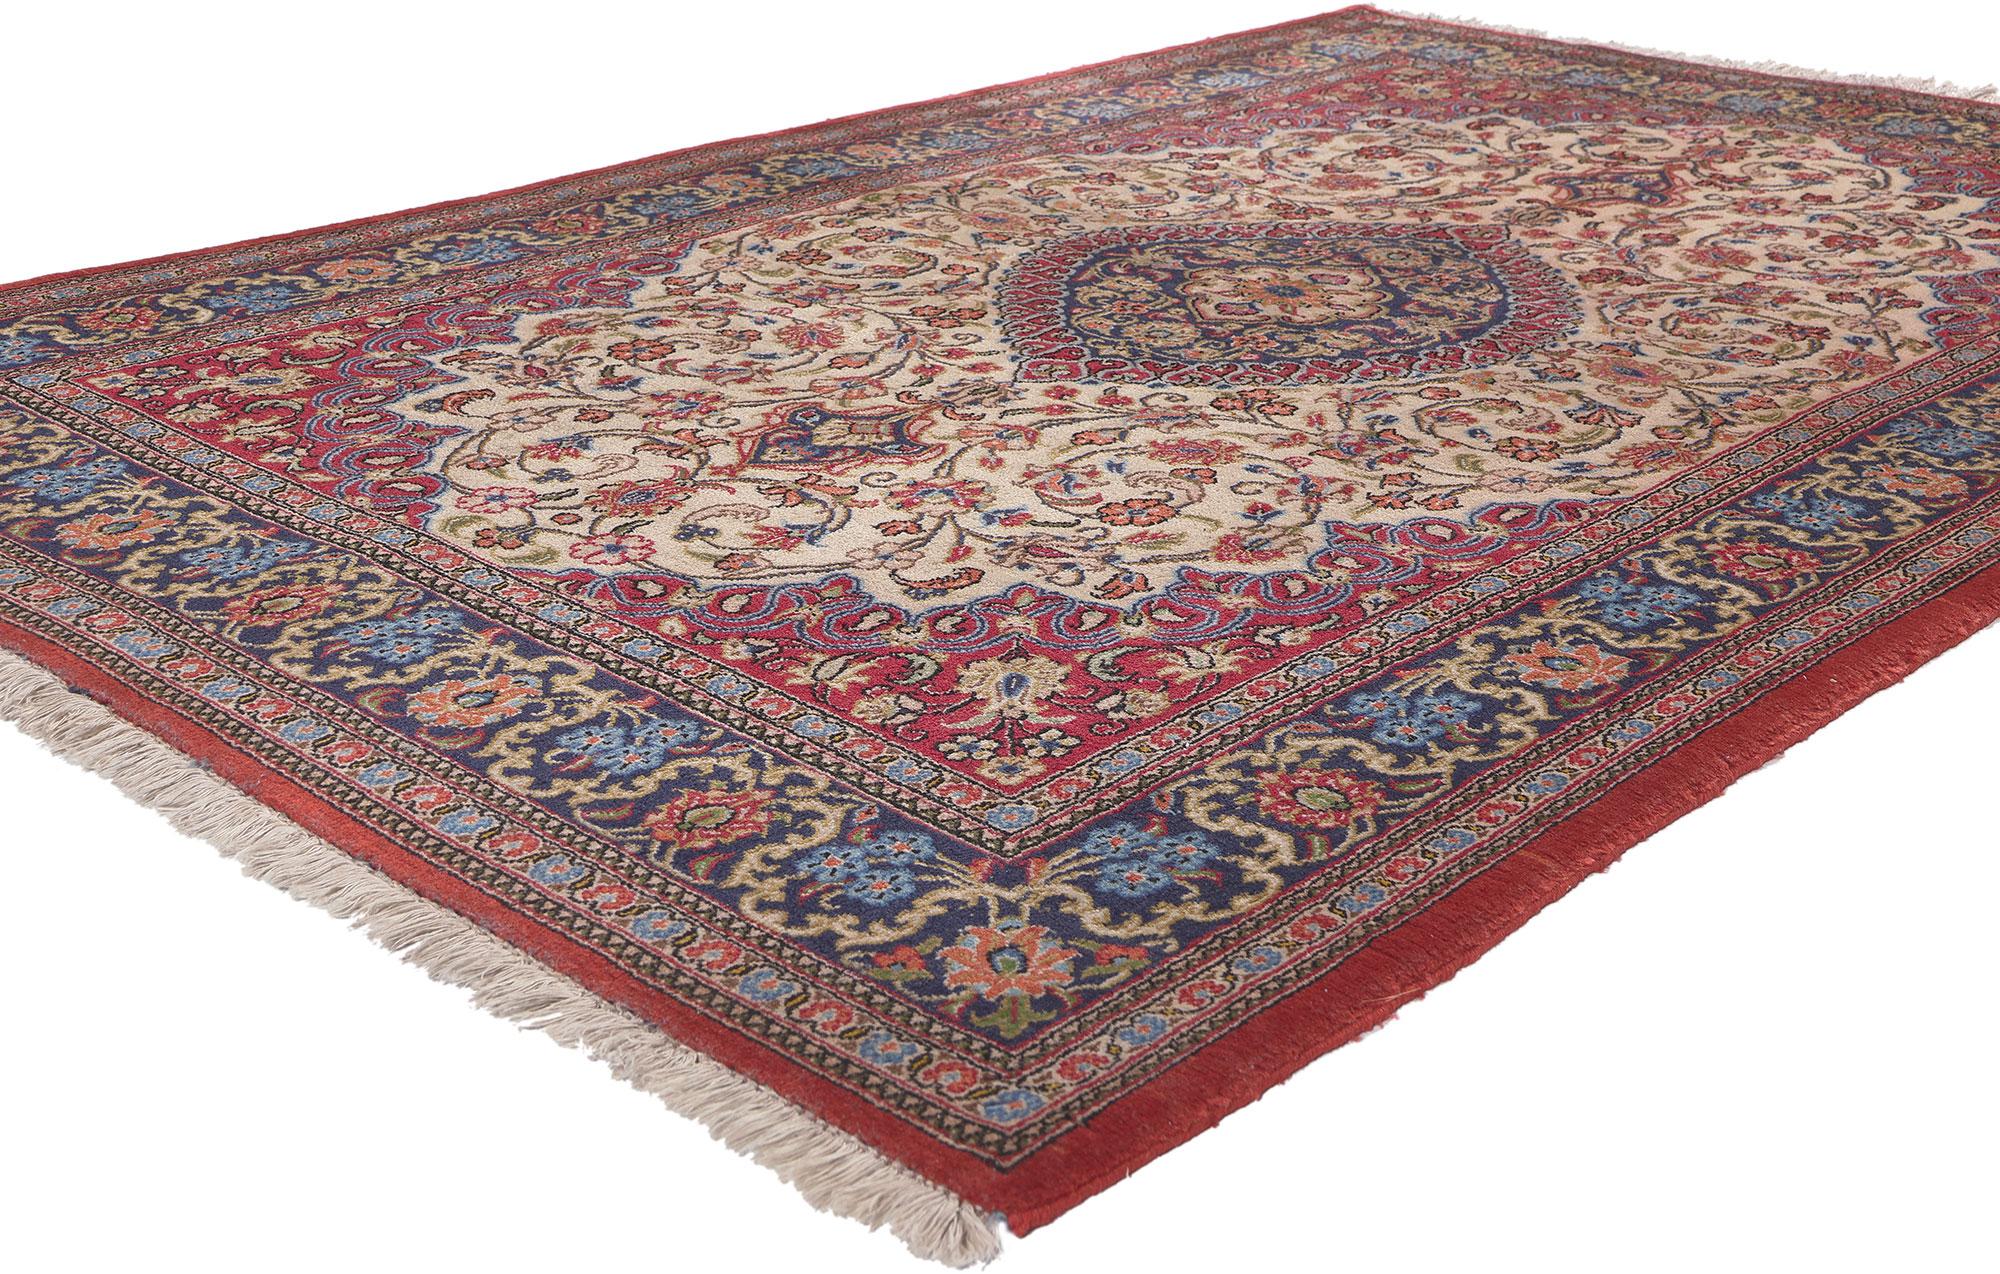 78689 Vintage Persian Qum Rug, 04'05 x 06'07. Persische Qum-Teppiche sind exquisite handgewebte Kreationen, die aus der Stadt Qum im Iran stammen und für ihre außergewöhnliche Handwerkskunst und zeitlose Schönheit bekannt sind. Die aus feinen